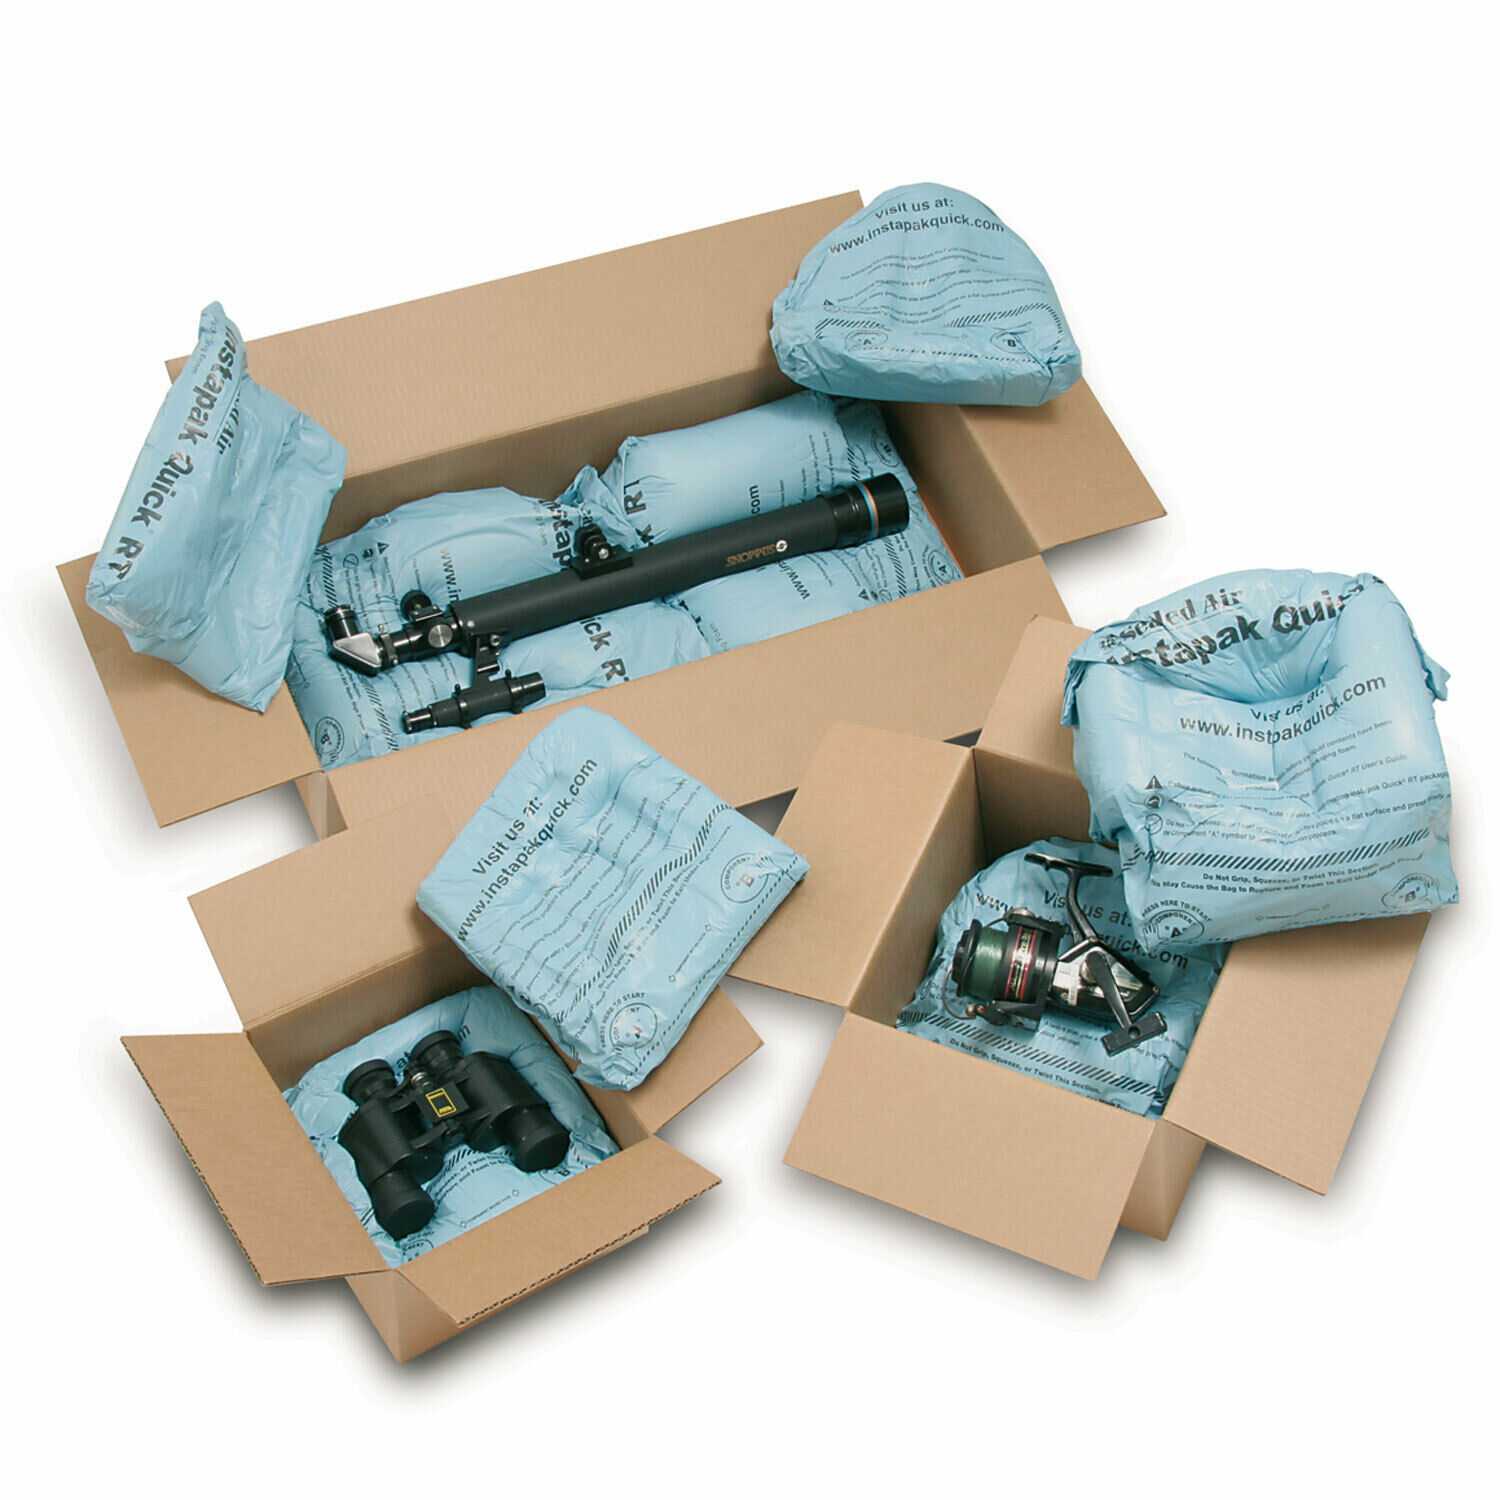 Пакет пром. Защитная пена Instapak для упаковки. Упаковка товара для транспортировки. Упаковка для хрупких изделий. Пакеты для упаковки хрупких грузов.